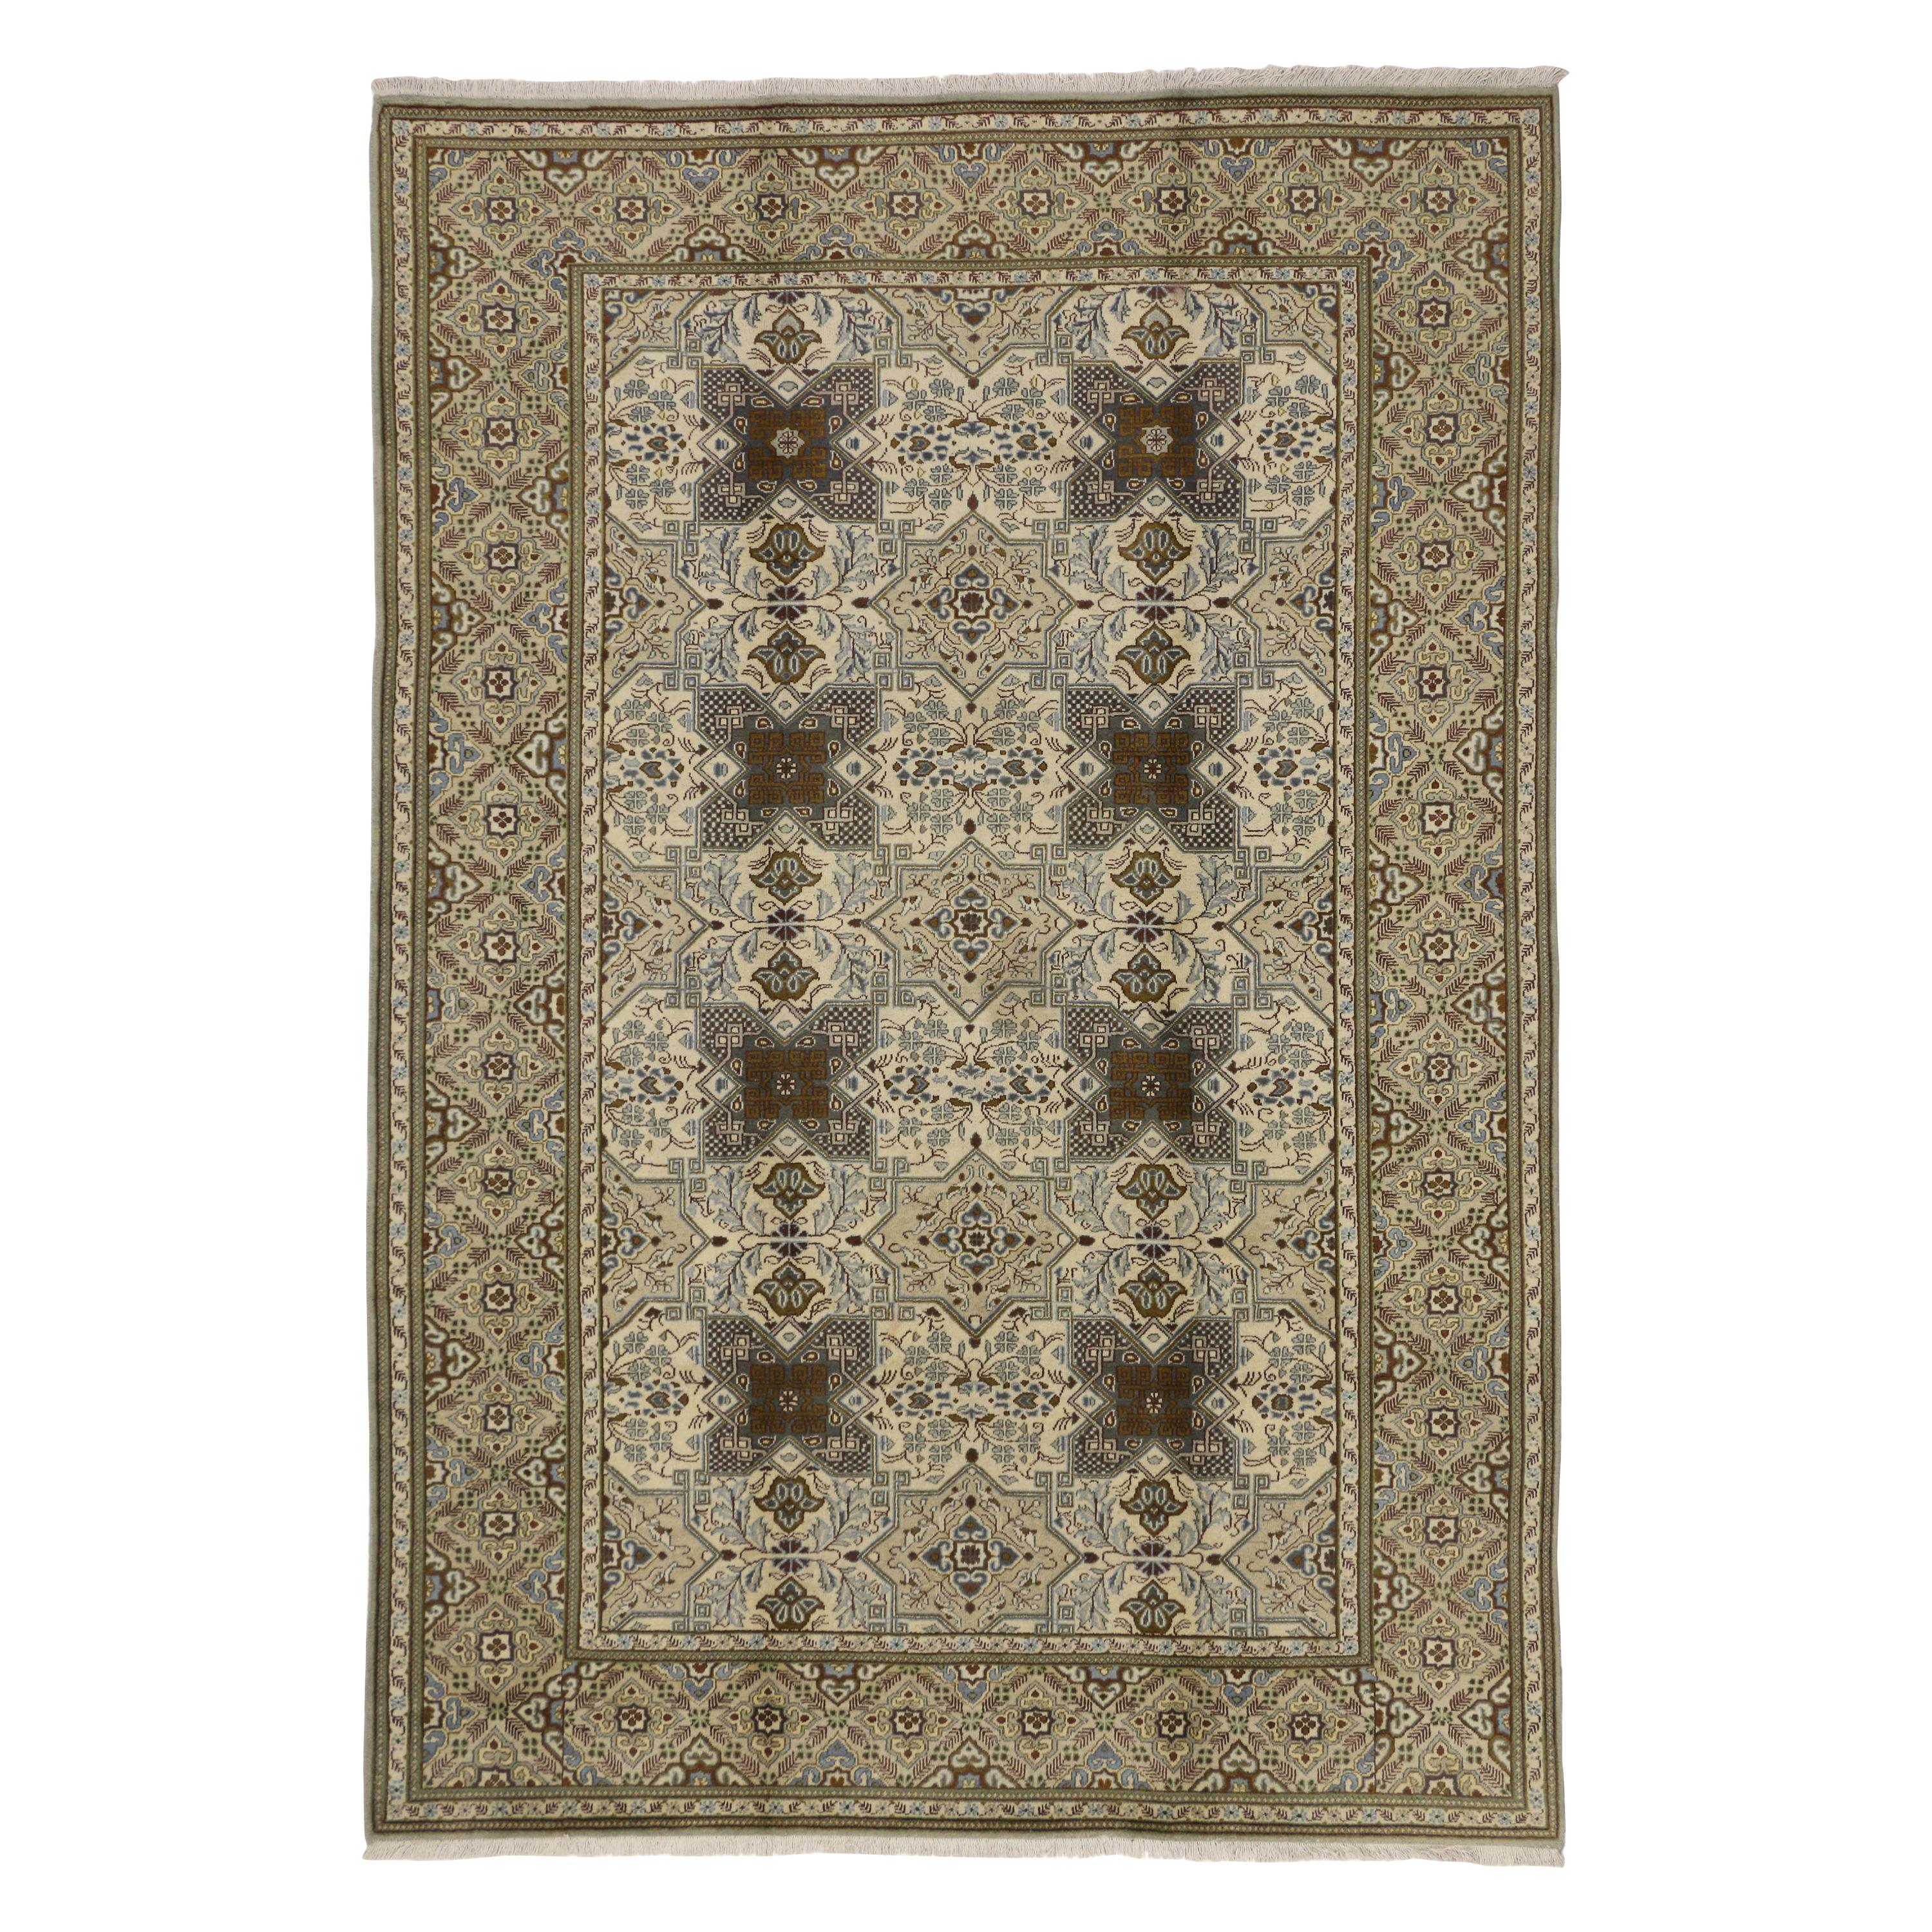 Vintage Persian Tabriz Rug with Islamic Quatrefoil Tile Art Work Design For Sale